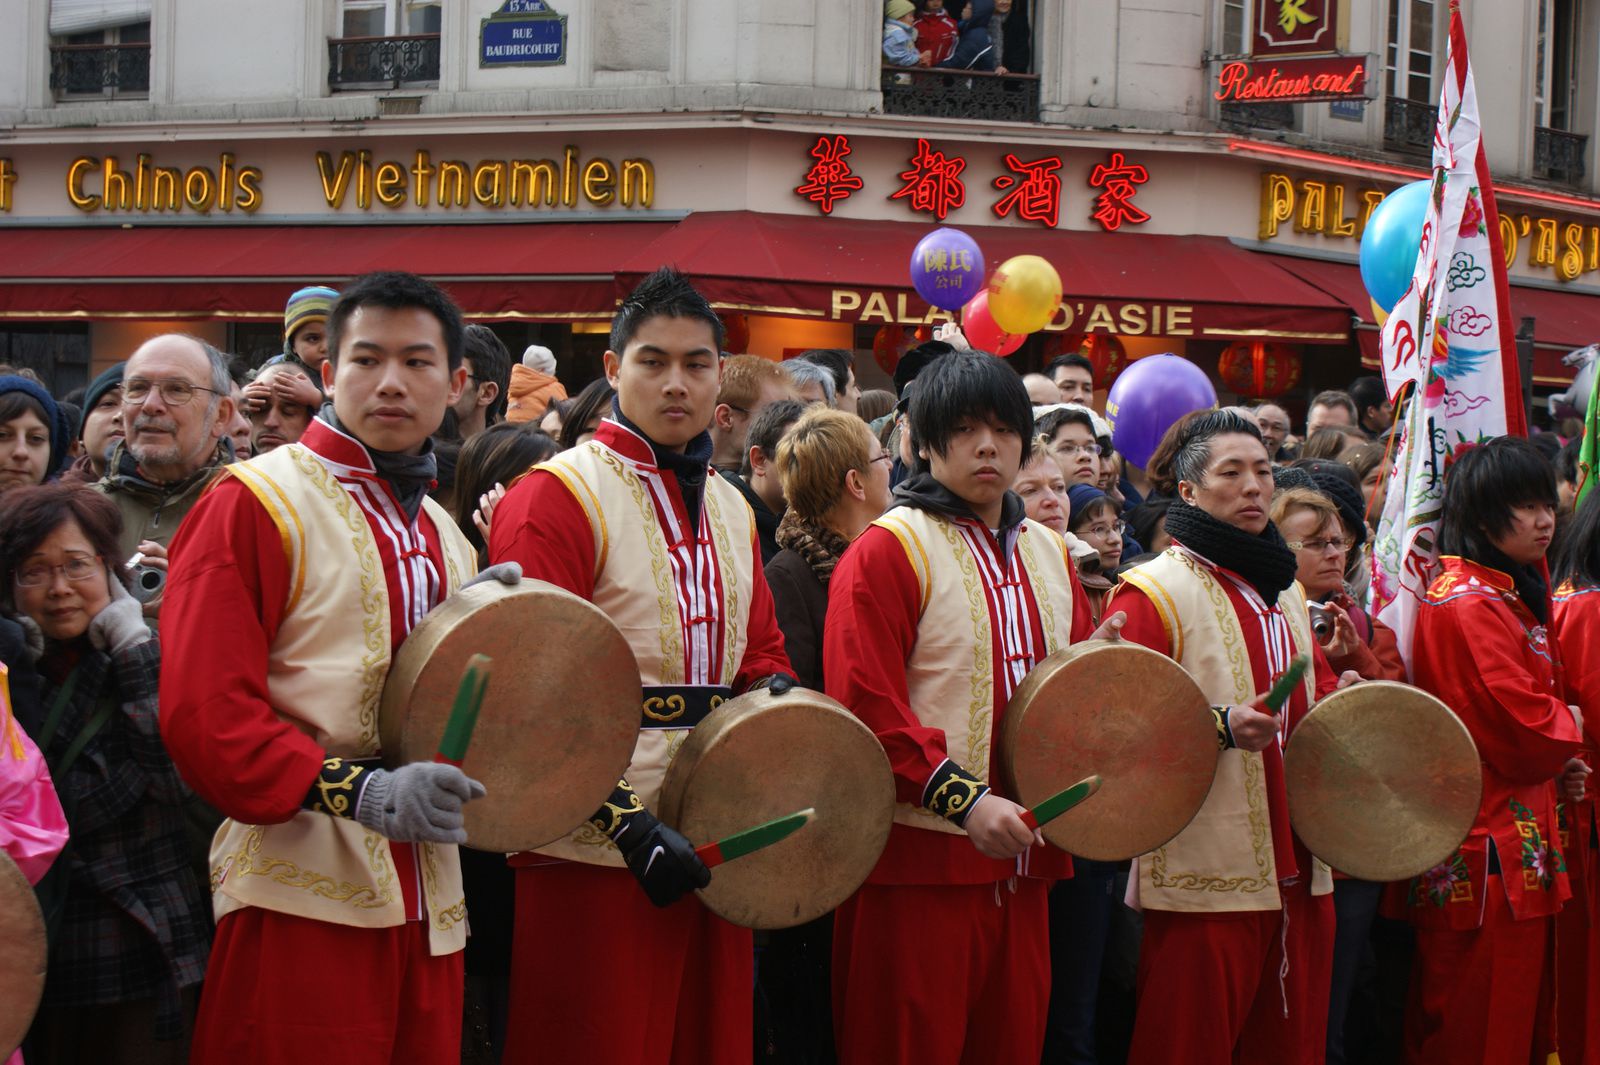 Carnaval Chinois 2010 Paris 75013 